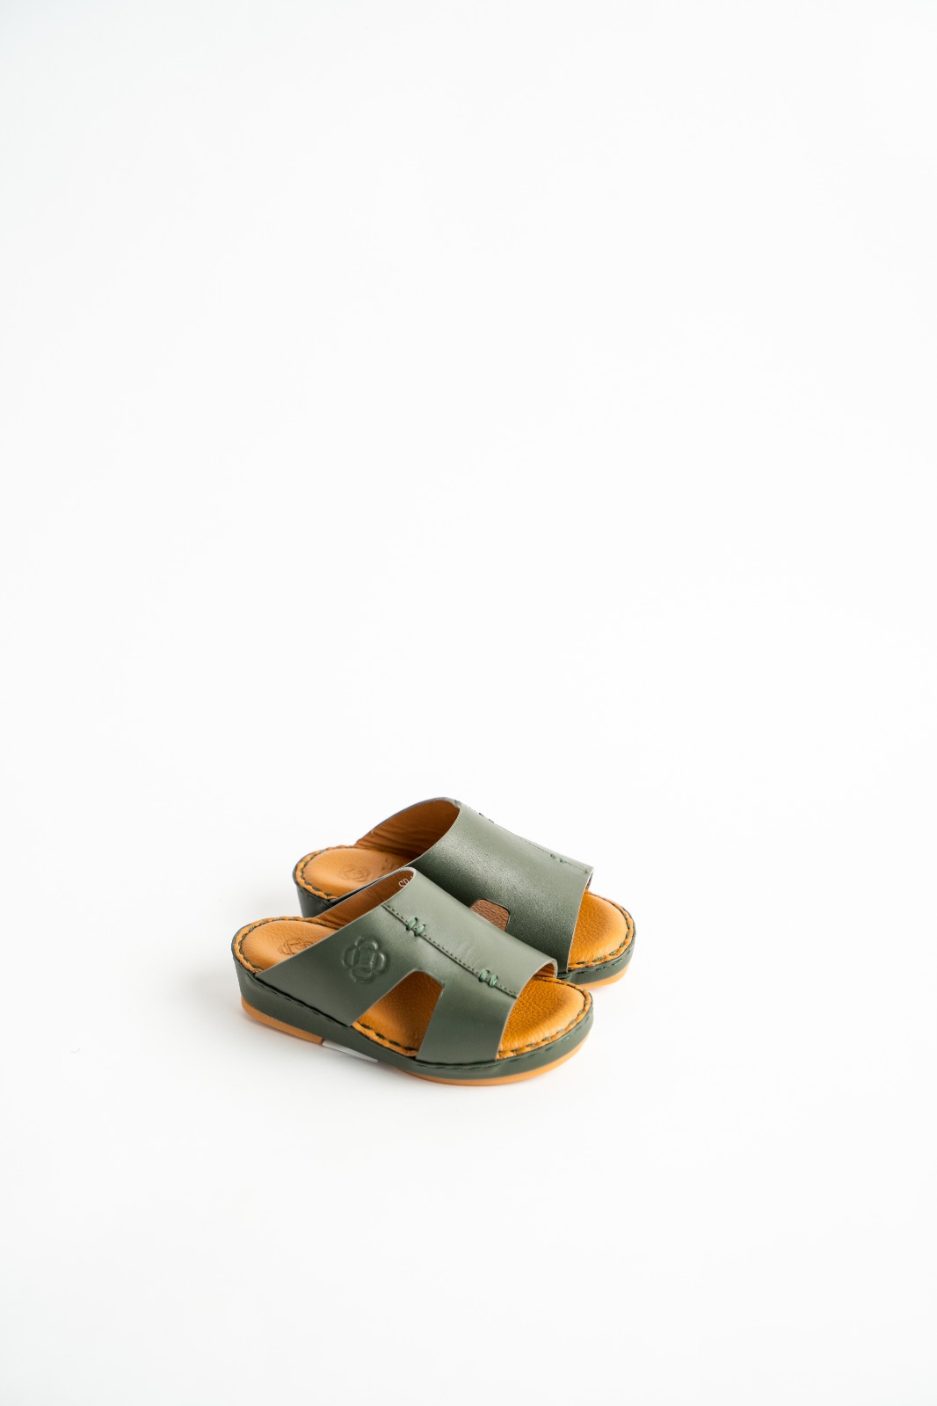 Buy OBH Sandals Kids SP Model 1 Olive Color Online in UAE | OBH Collection